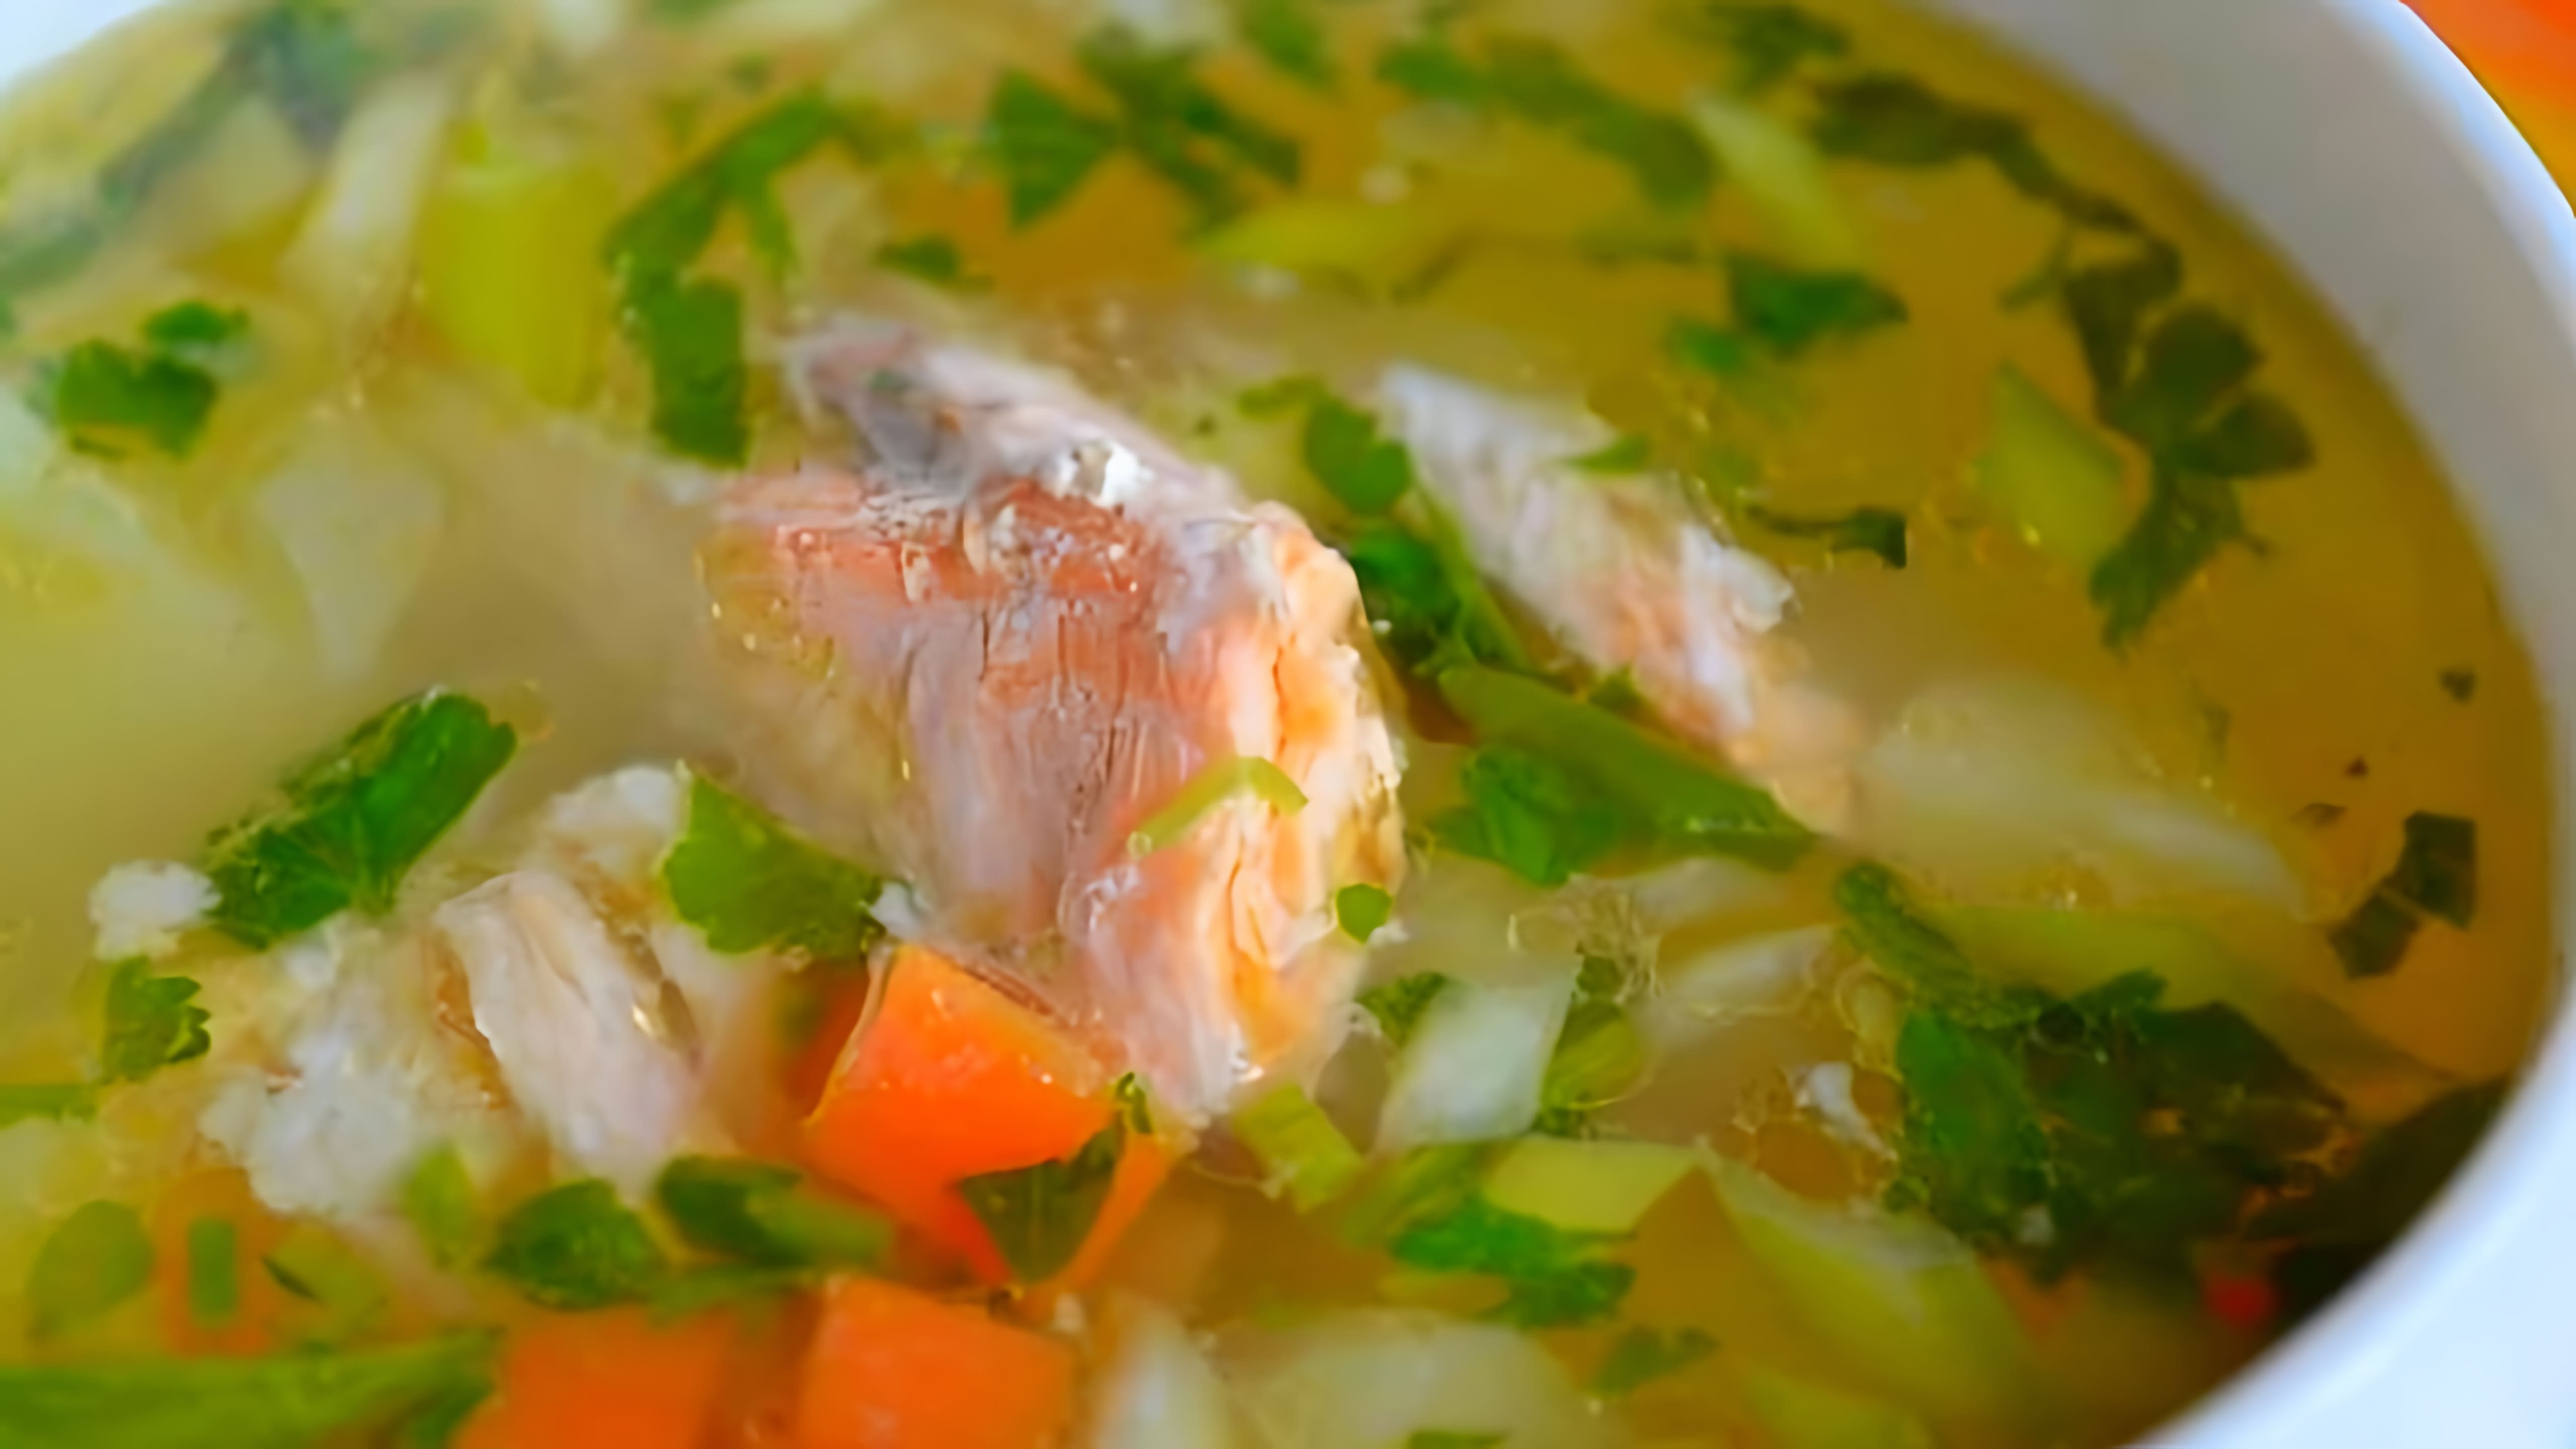 В этом видео демонстрируется процесс приготовления рыбного супа из хребтов лосося